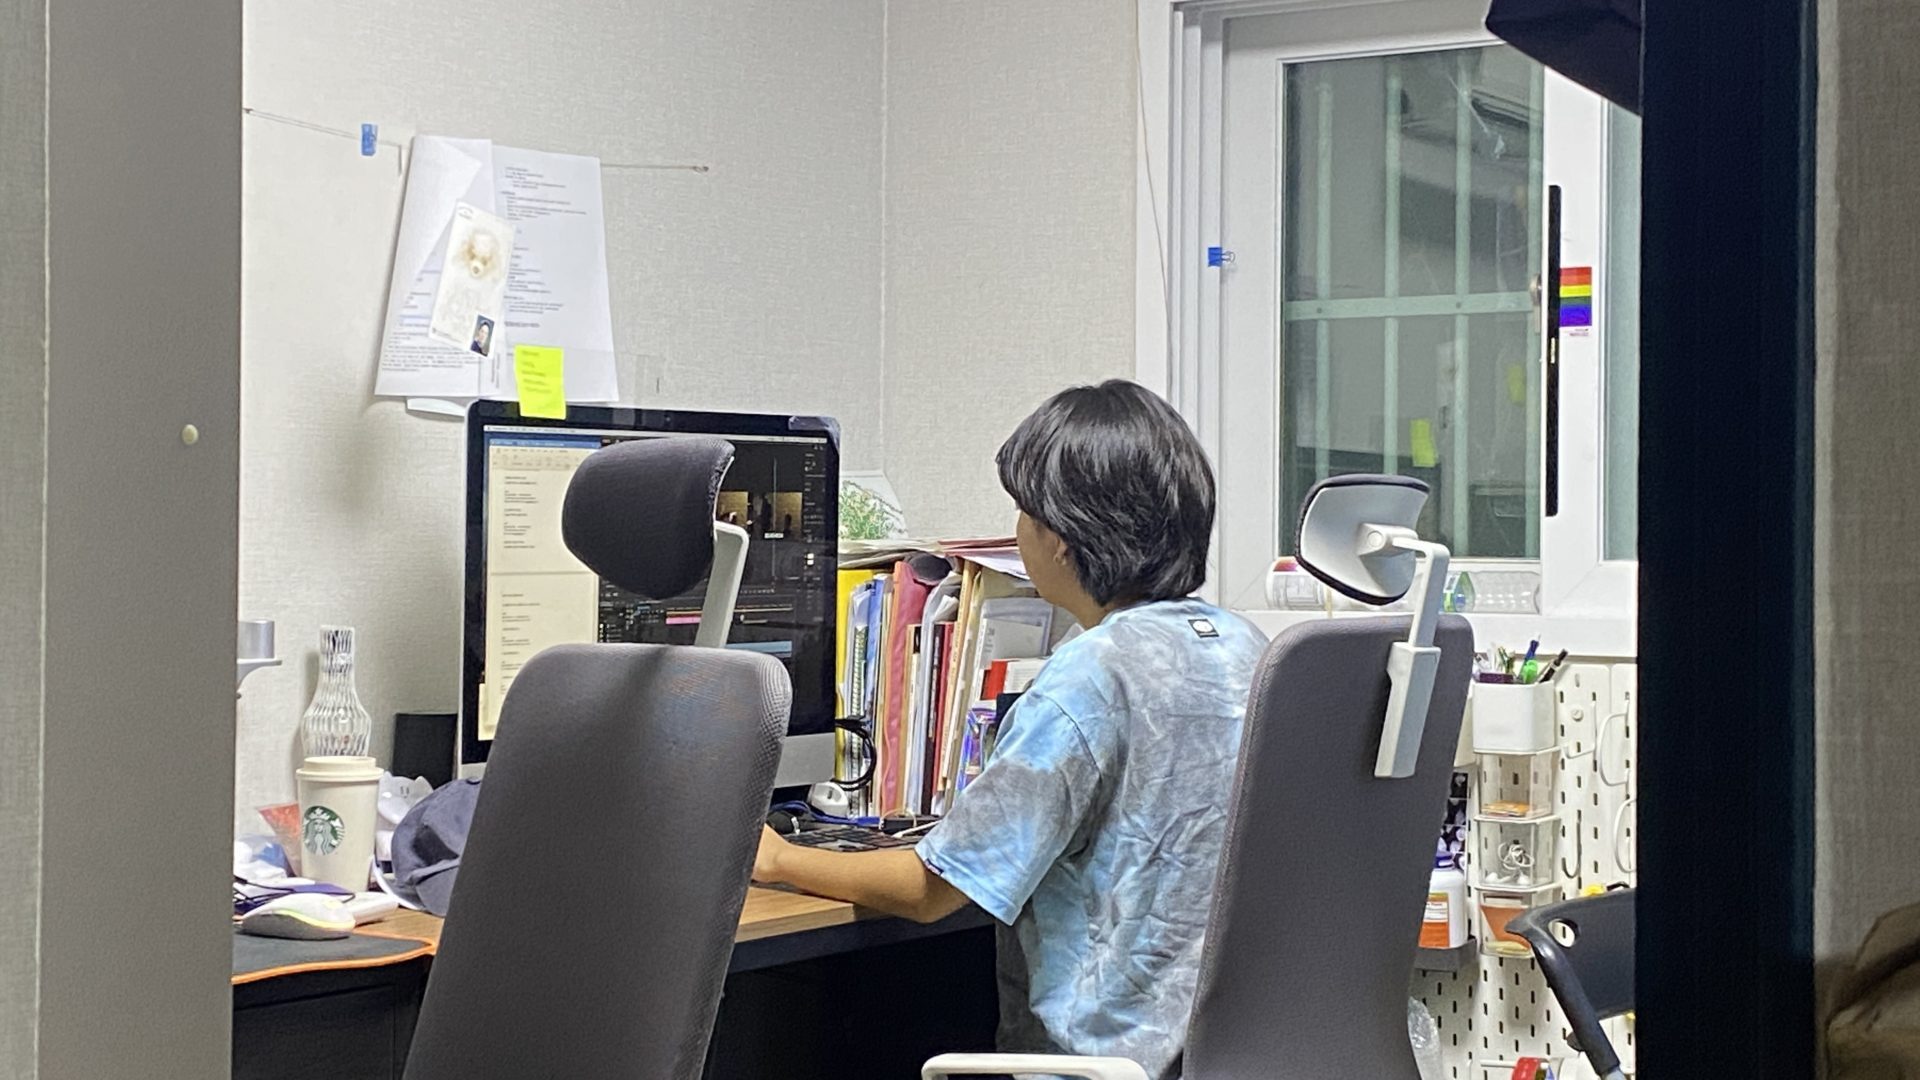 사진1. 자원활동가 요다가 서울인권영화제 사무실에서 에 자막을 입히고 있다. 창문 바깥은 깜깜하고 사무실 안은 환하다.